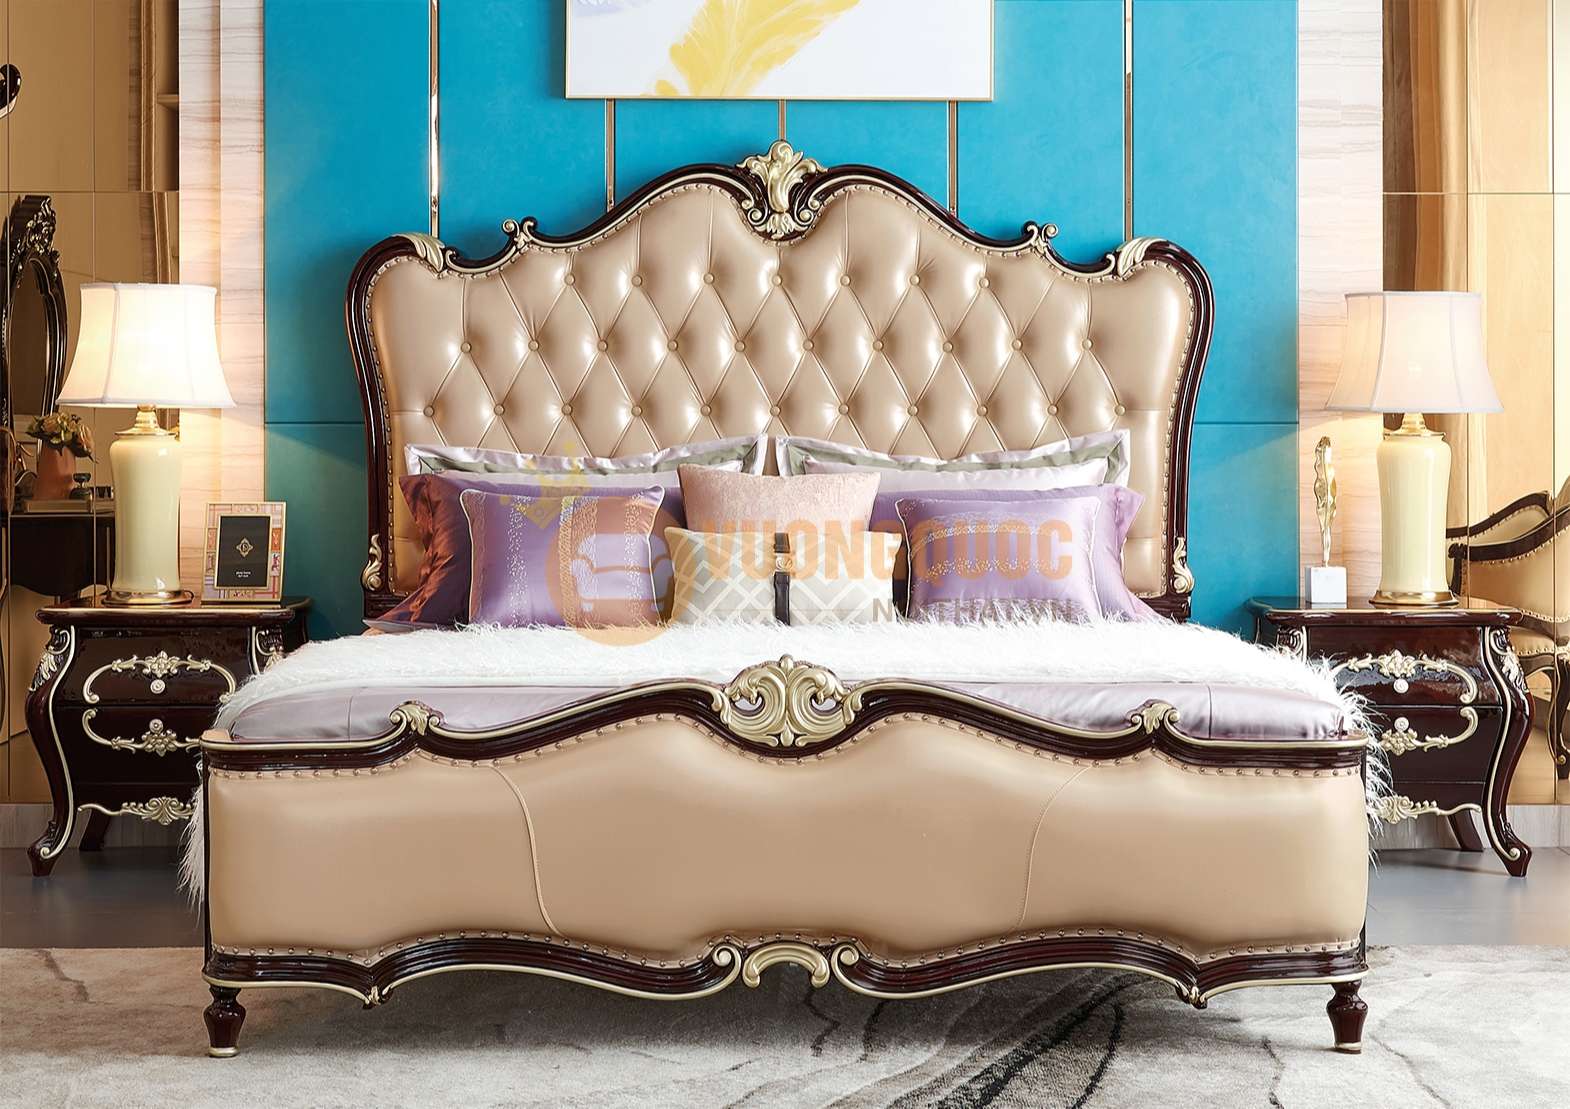 Giường ngủ tân cổ điển - Đưa không gian phòng ngủ của bạn trở lại thời kỳ hoàng kim với giường ngủ tân cổ điển. Thiết kế tinh tế, họa tiết phong phú và chất liệu đẳng cấp tạo nên một không gian sang trọng và ấm cúng cho bạn.